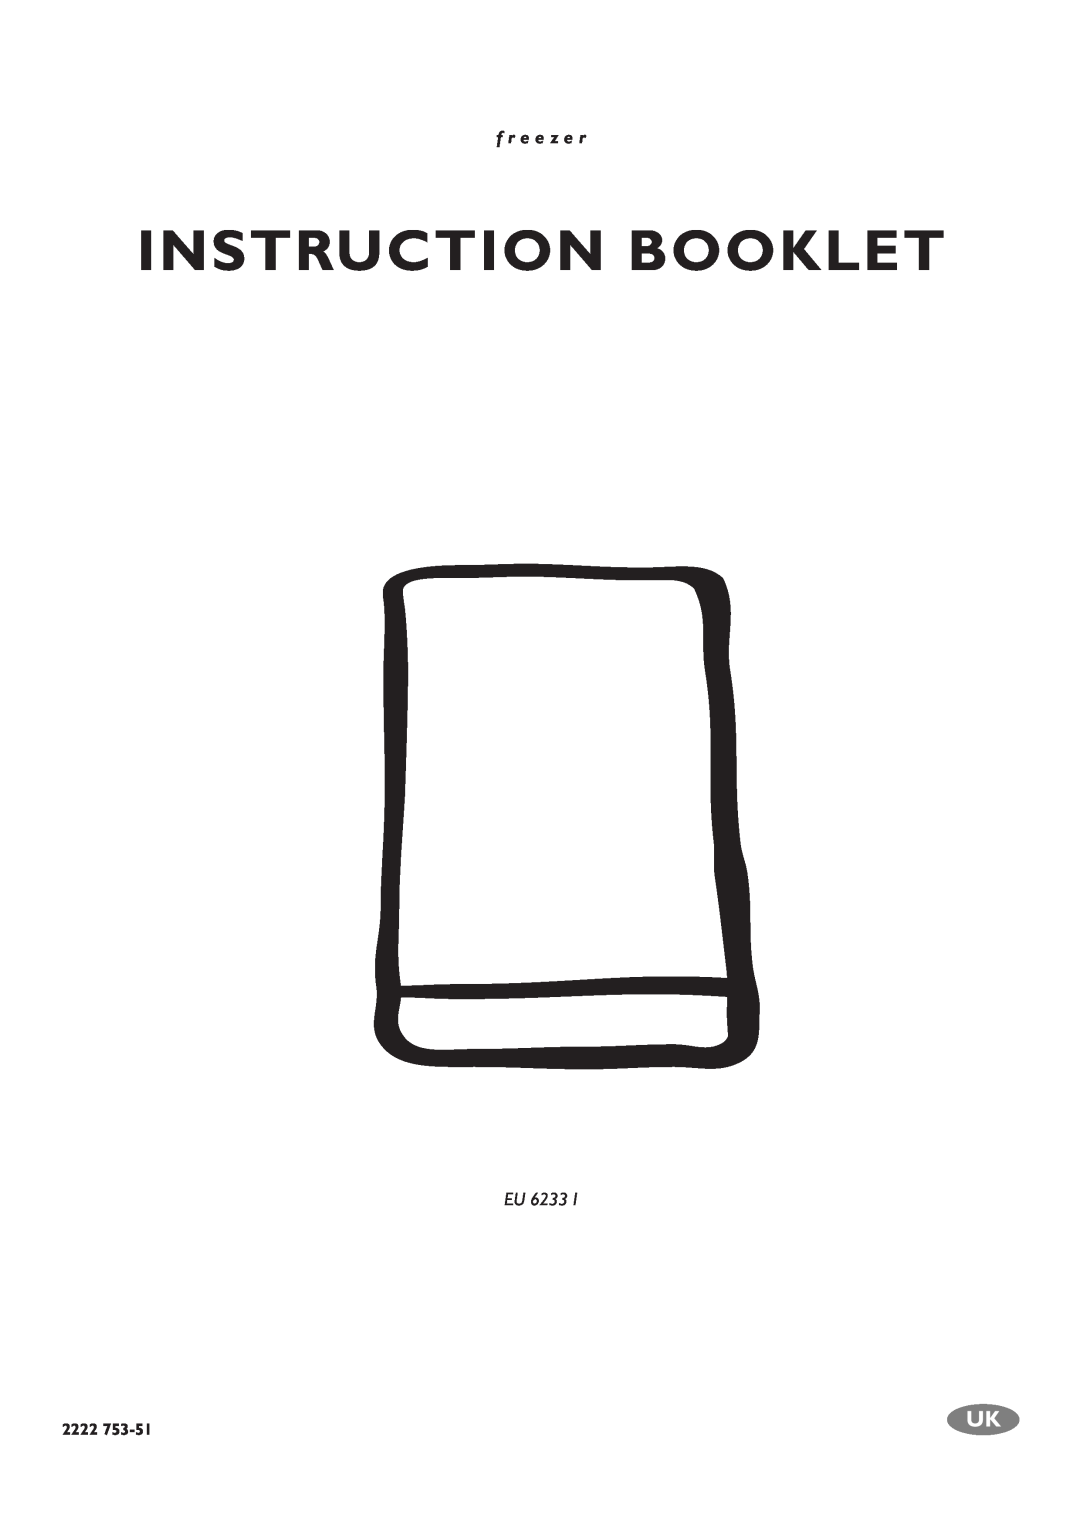 Electrolux EU 6233 manual Instruction Booklet, f r e e z e r, Eu, 2222 